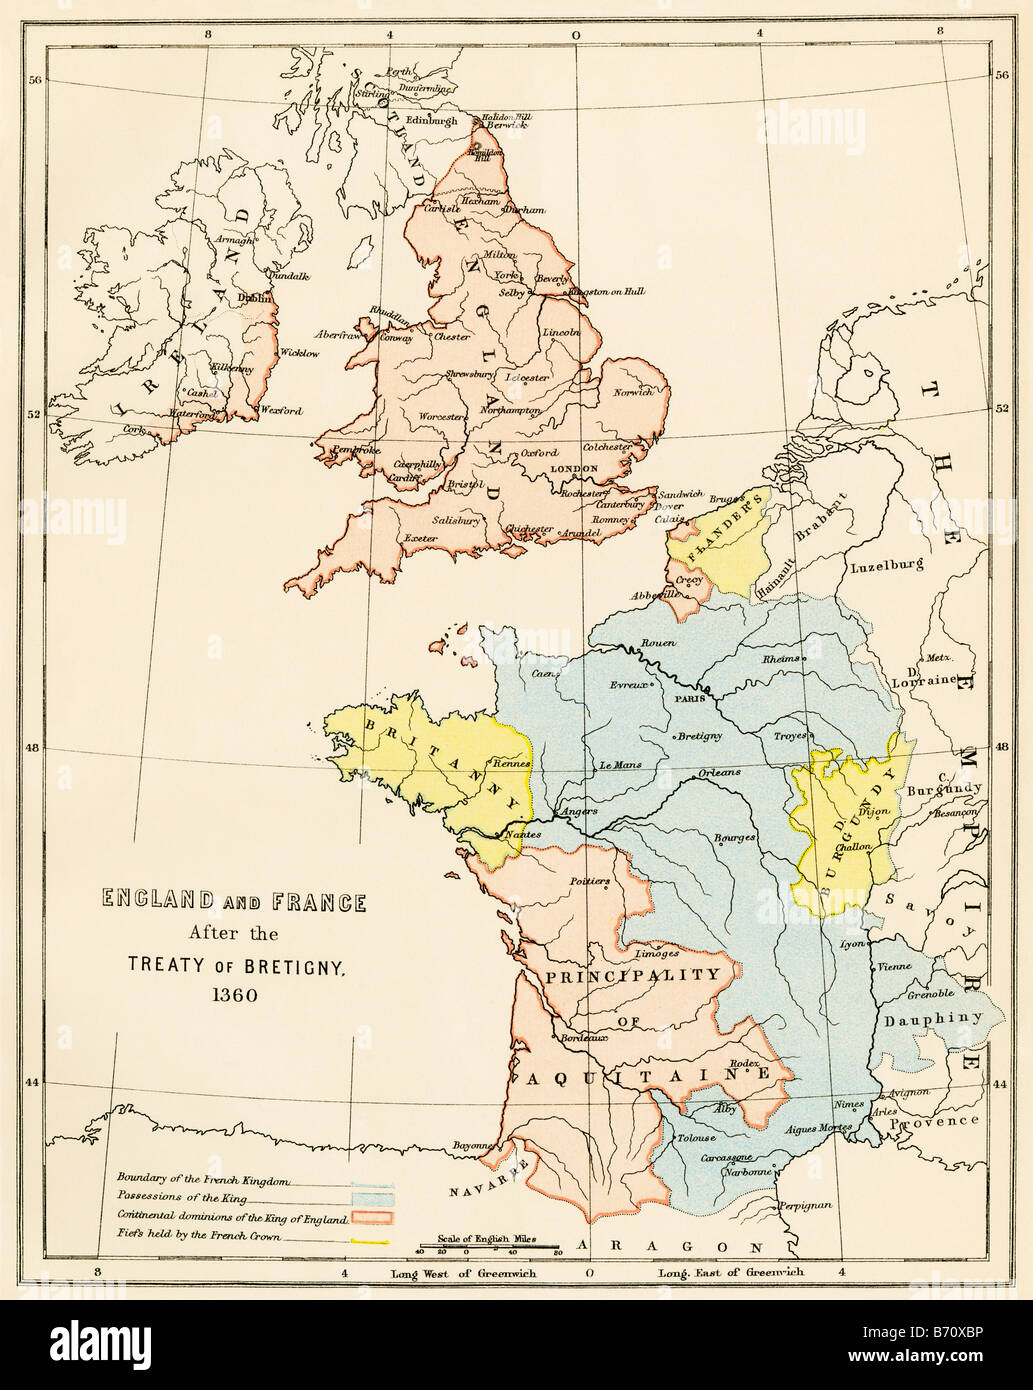 Inglaterra Y Francia Despues De La Guerra De Los Cien Anos En 1360 Litografia De Color B70xbp 